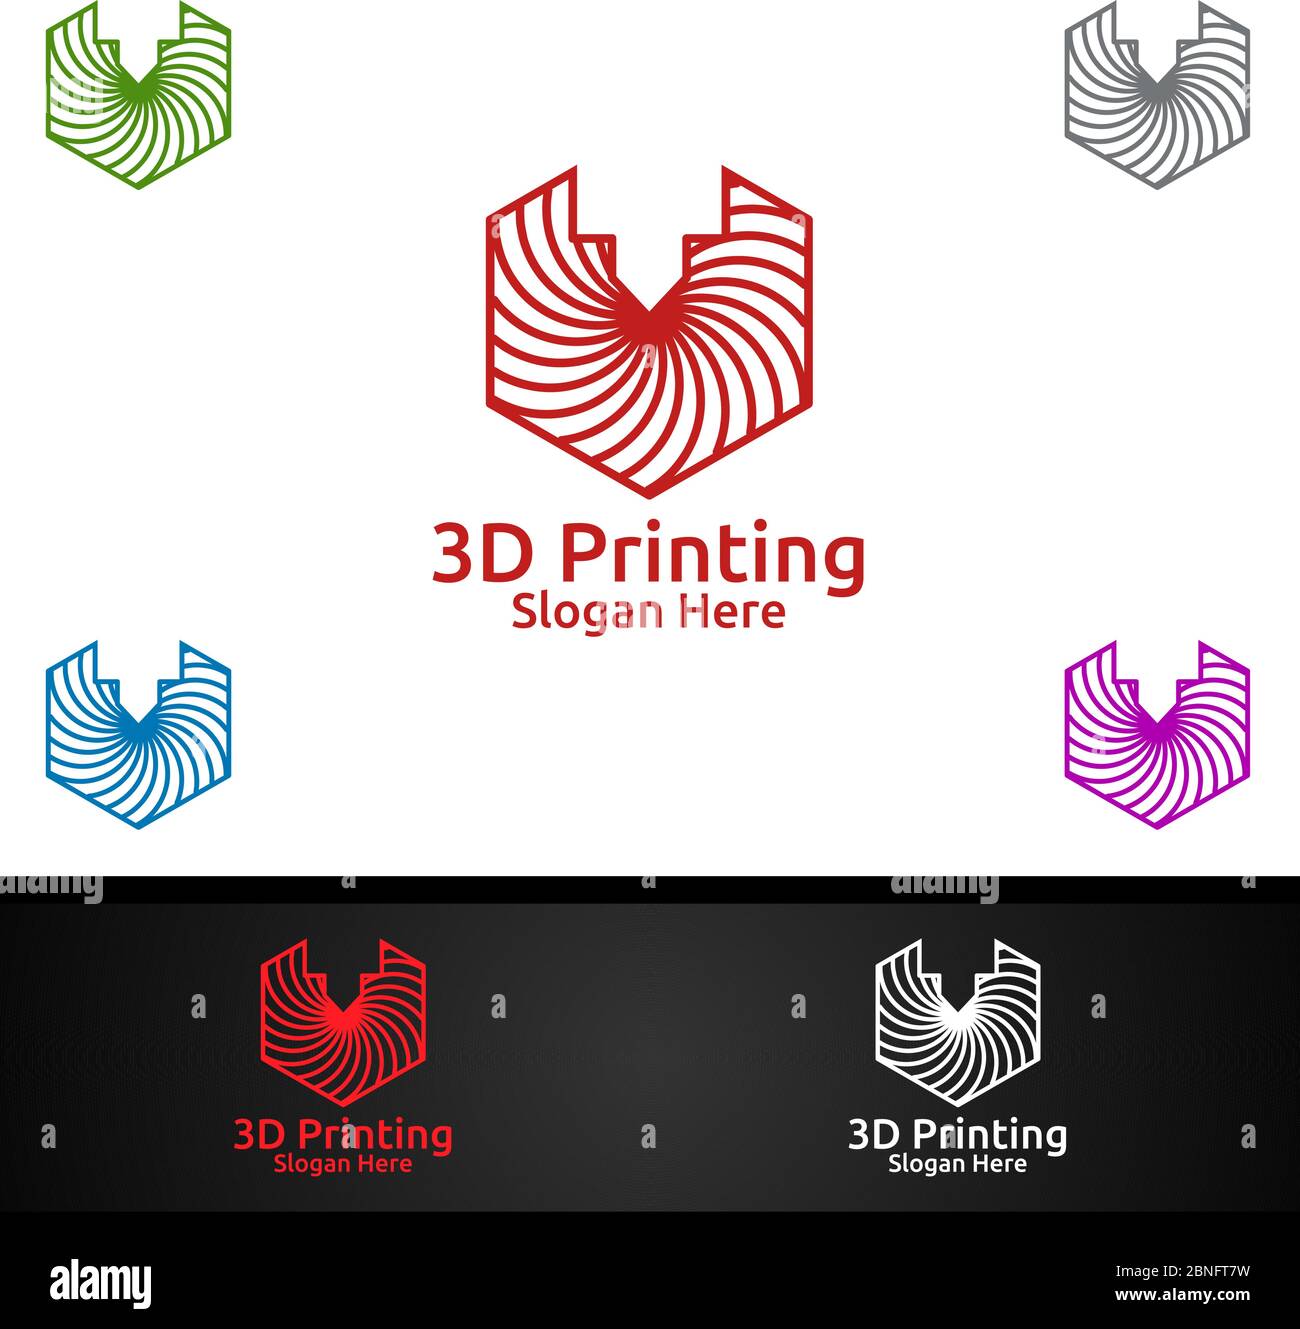 Portal Petrificar estanque 3d printing company logo seguro arco agencia